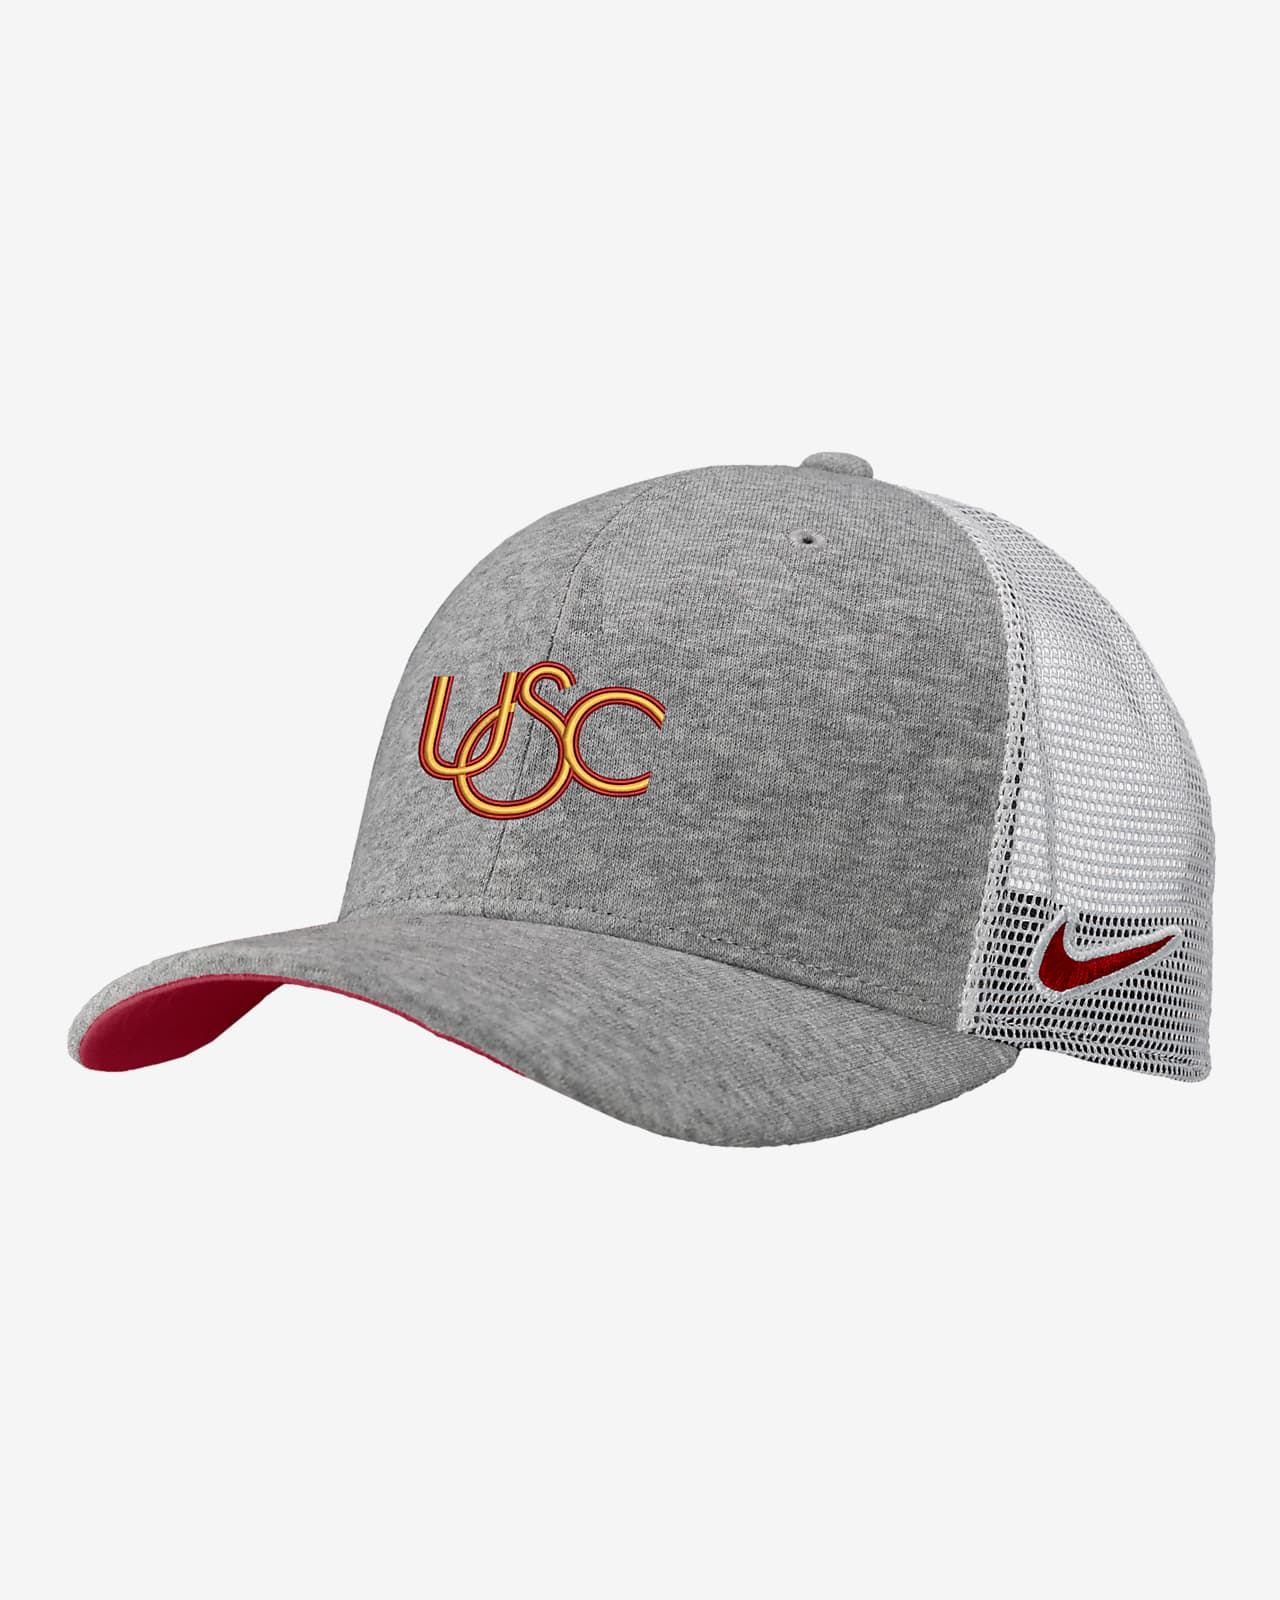 USC Classic99 Nike College Cap